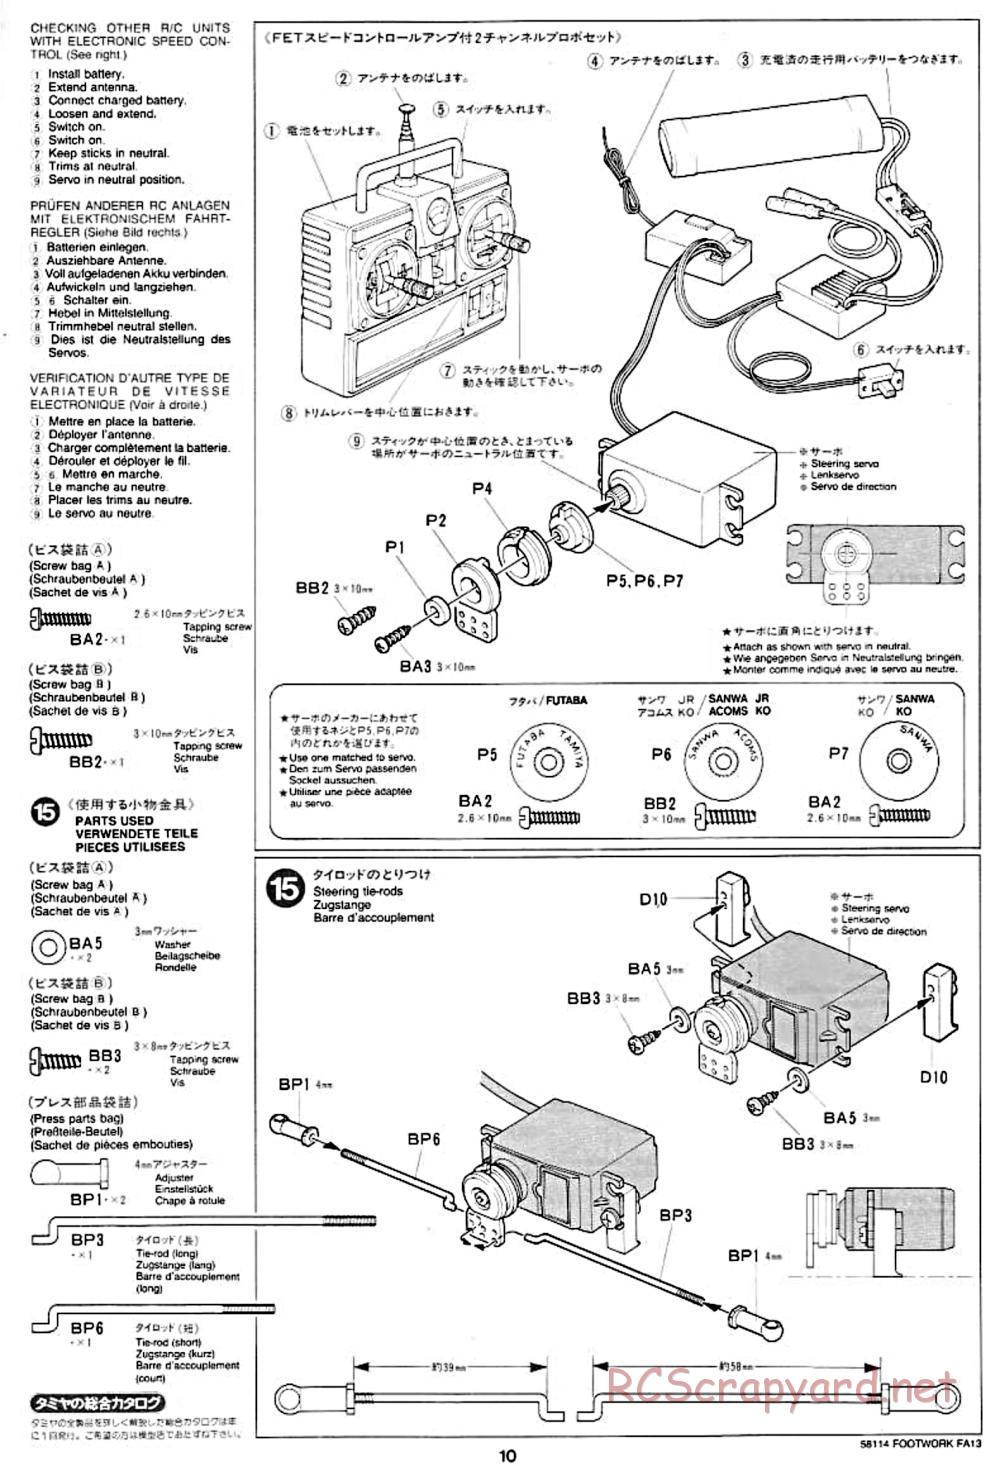 Tamiya - Footwork FA13 Mugen Honda - F102 Chassis - Manual - Page 10